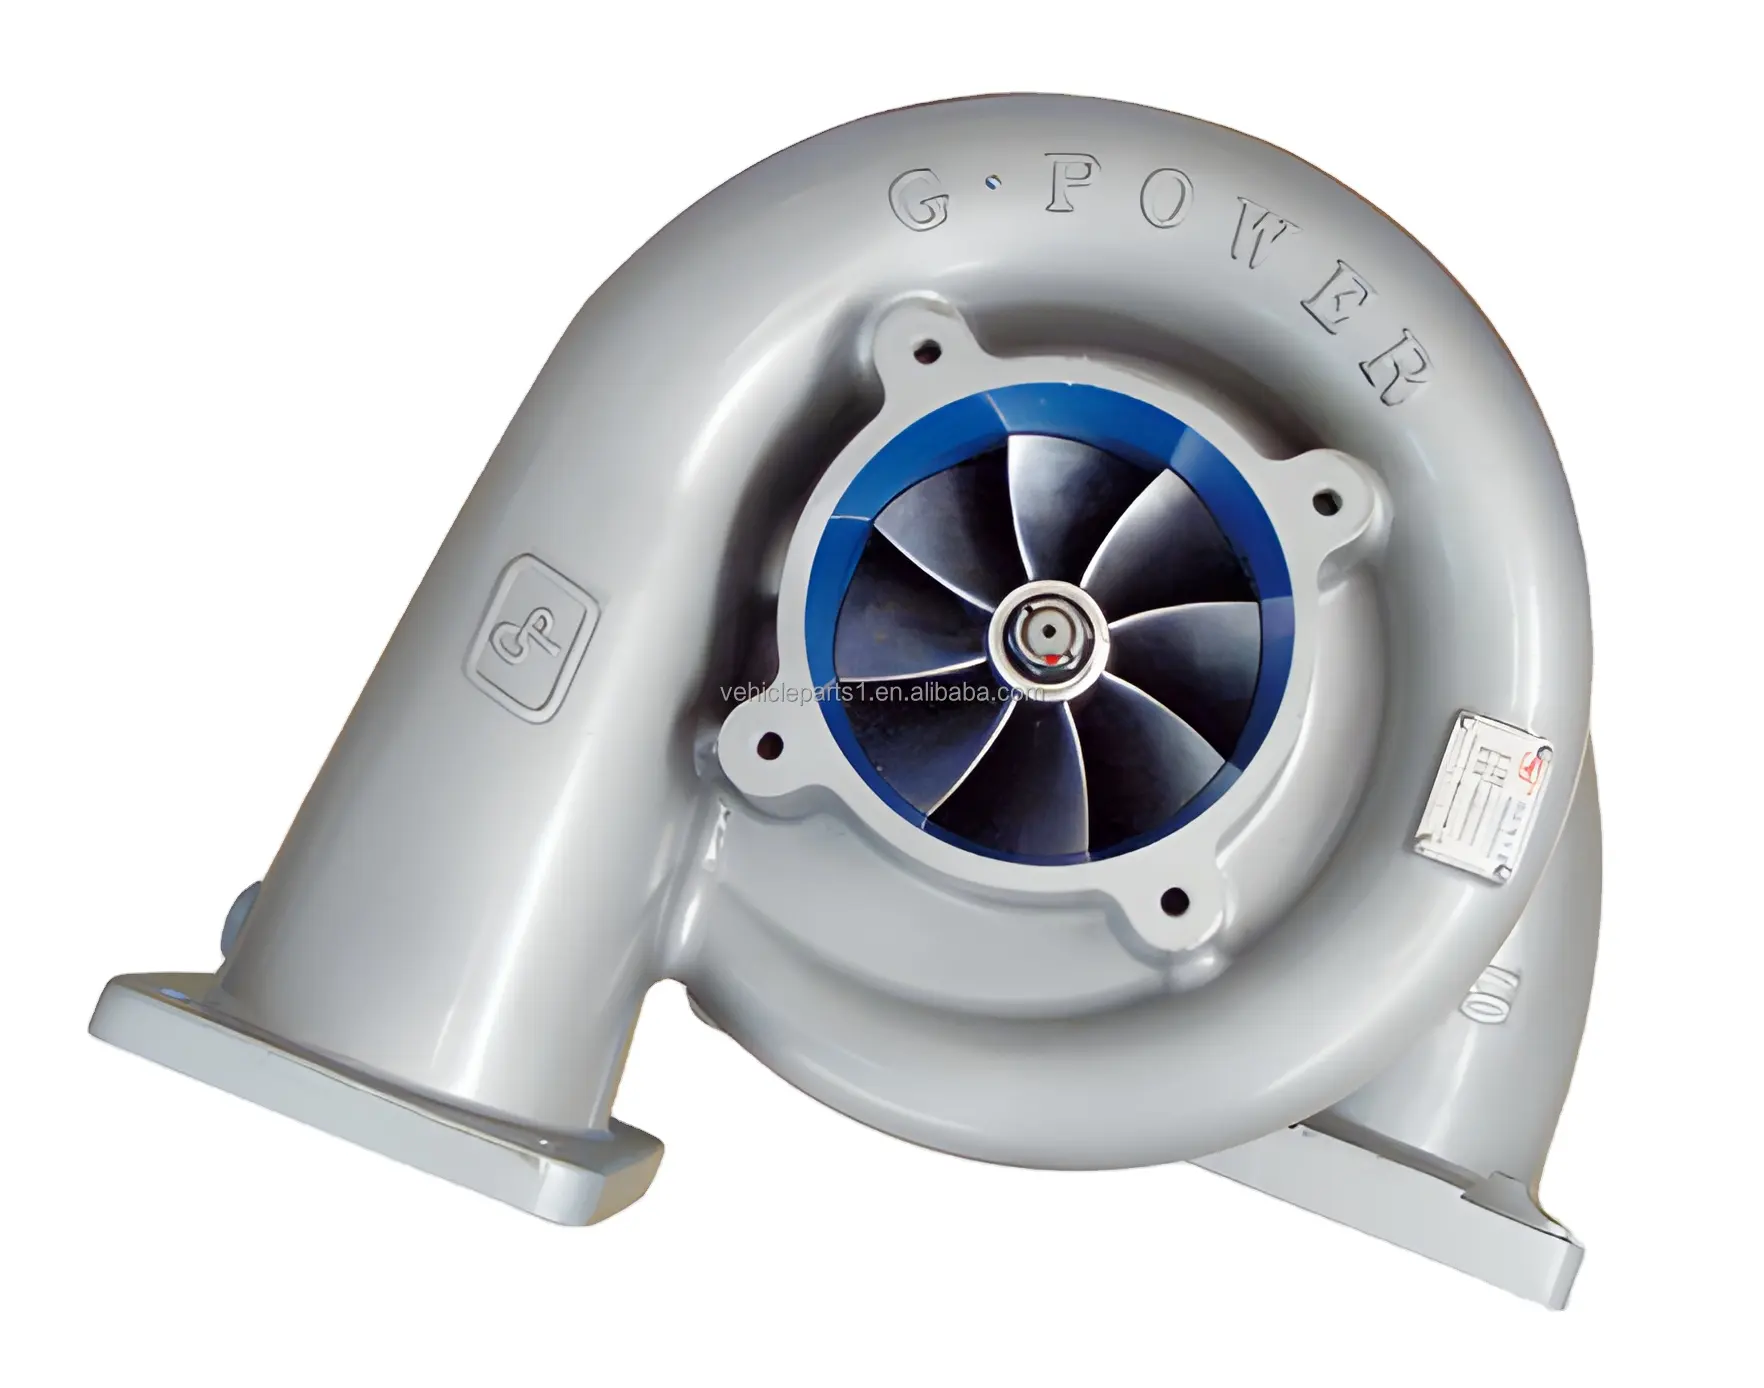 OEM pengisi daya Turbo d-brand untuk Gp H160/45 Condition kondisi baru Harga produsen bagus mesin Diesel teknis